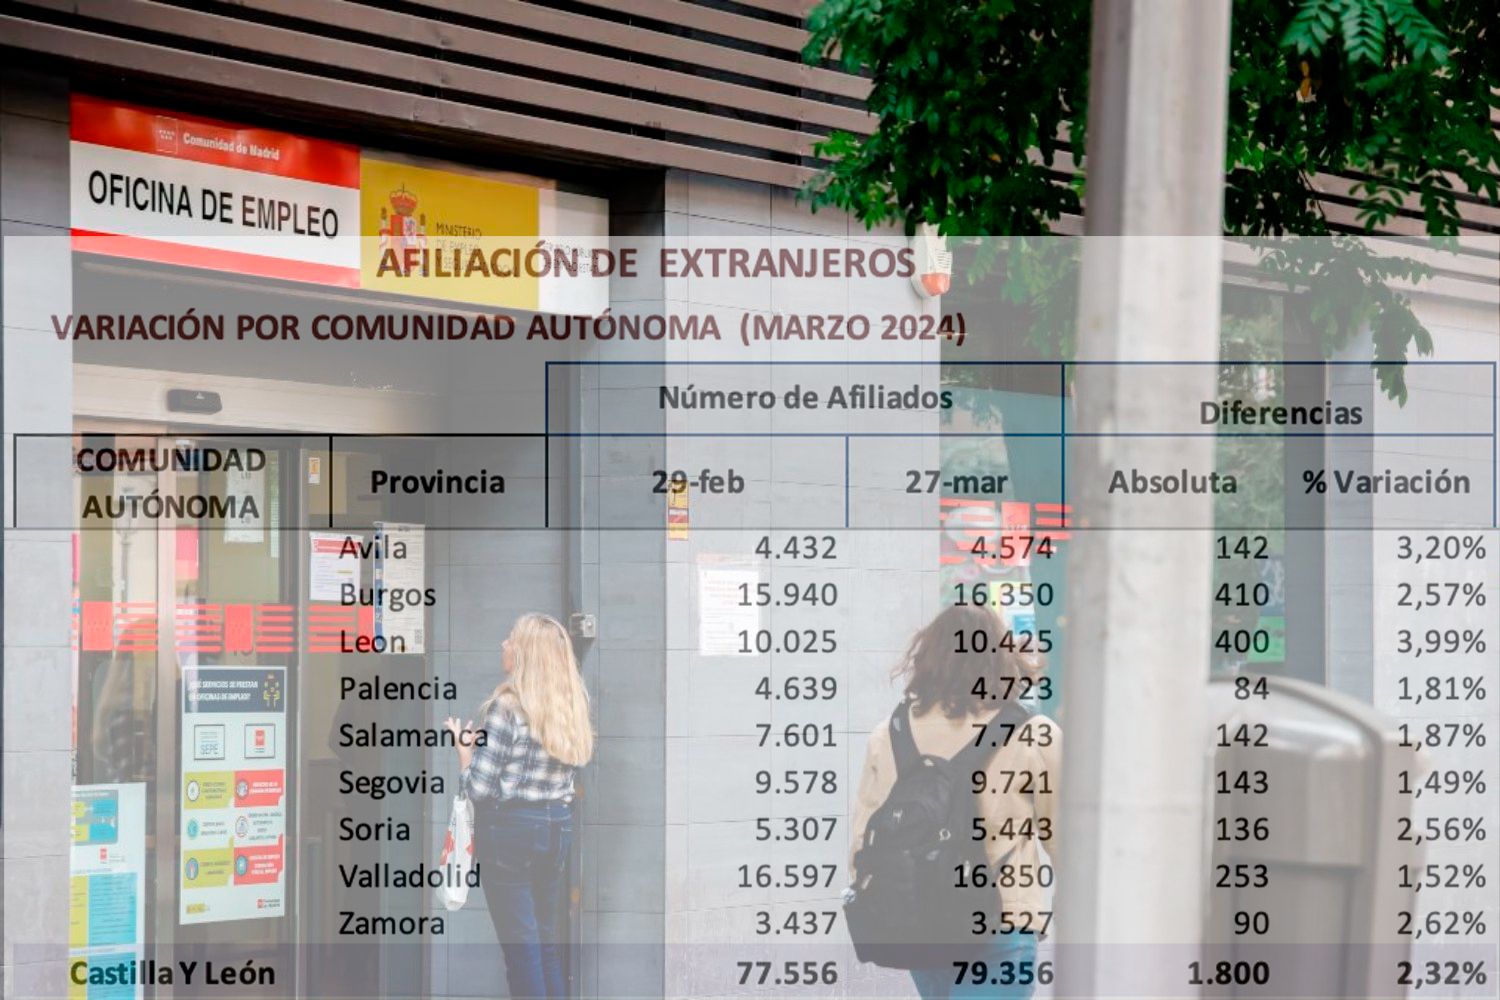 La provincia de León registra un aumento de 400 personas entre los afiliados extranjeros a la Seguridad Social en marzo